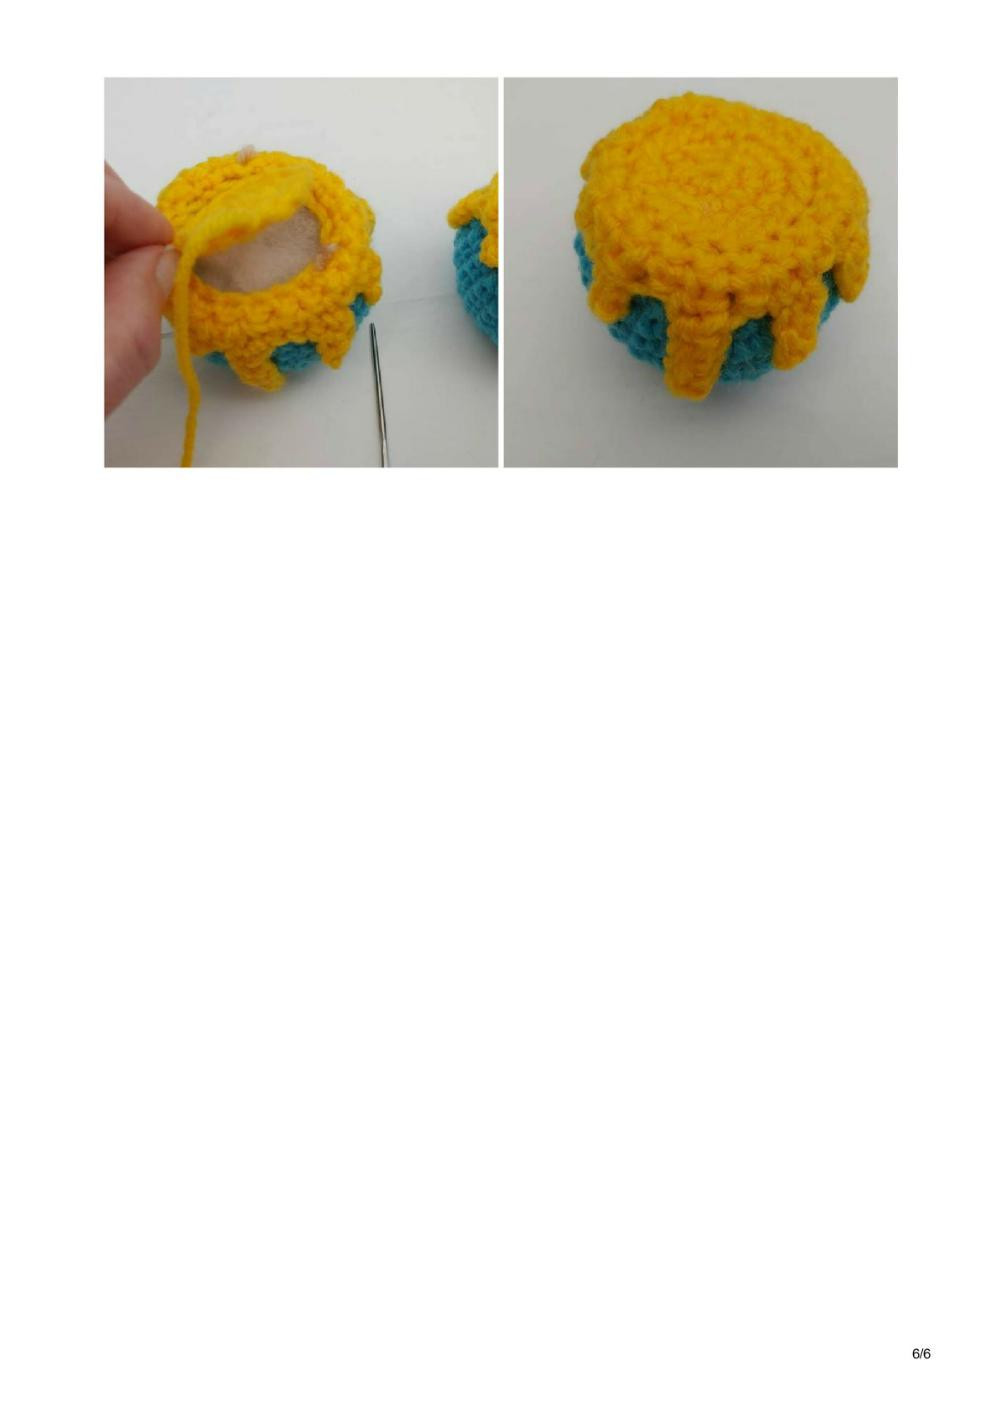 Floating Hunny Pot crochet pattern